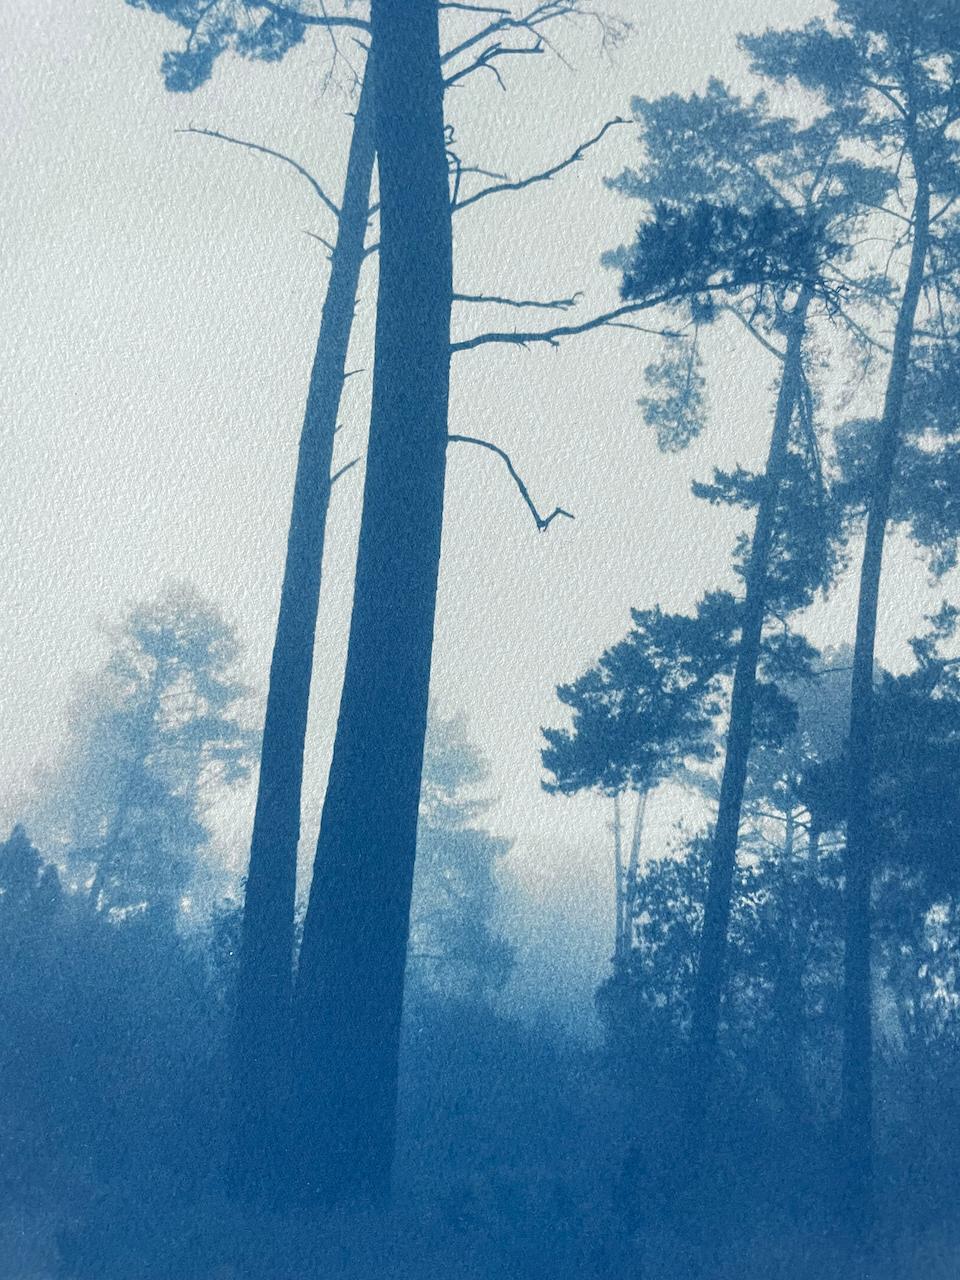 Schlanke Kiefern (Handbedruckte Cyanotypie,  18 x 12 Zoll) (Realismus), Photograph, von Christine So